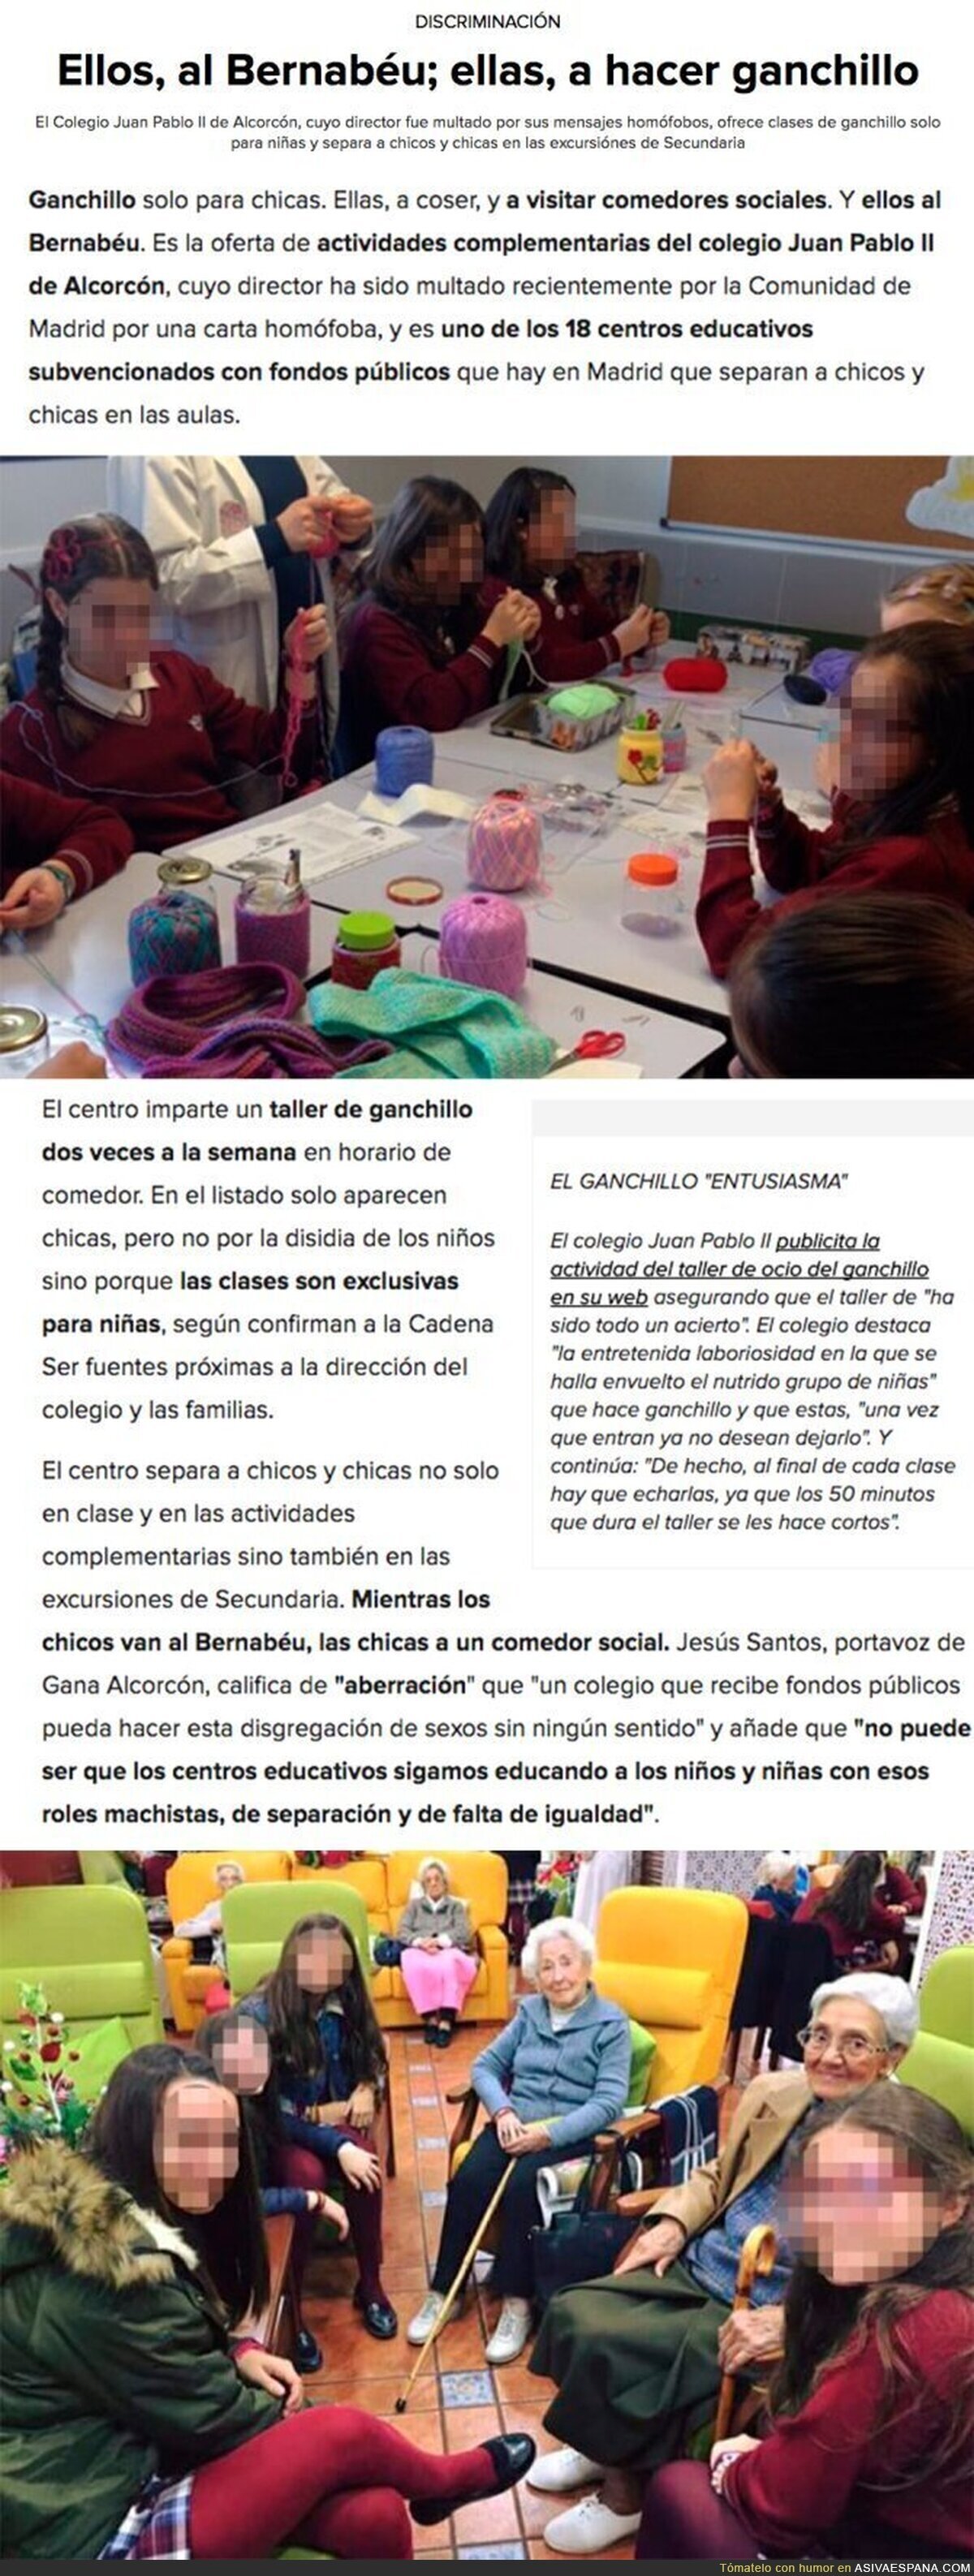 Las polémicas actividades para niños y niñas en Alcorcón